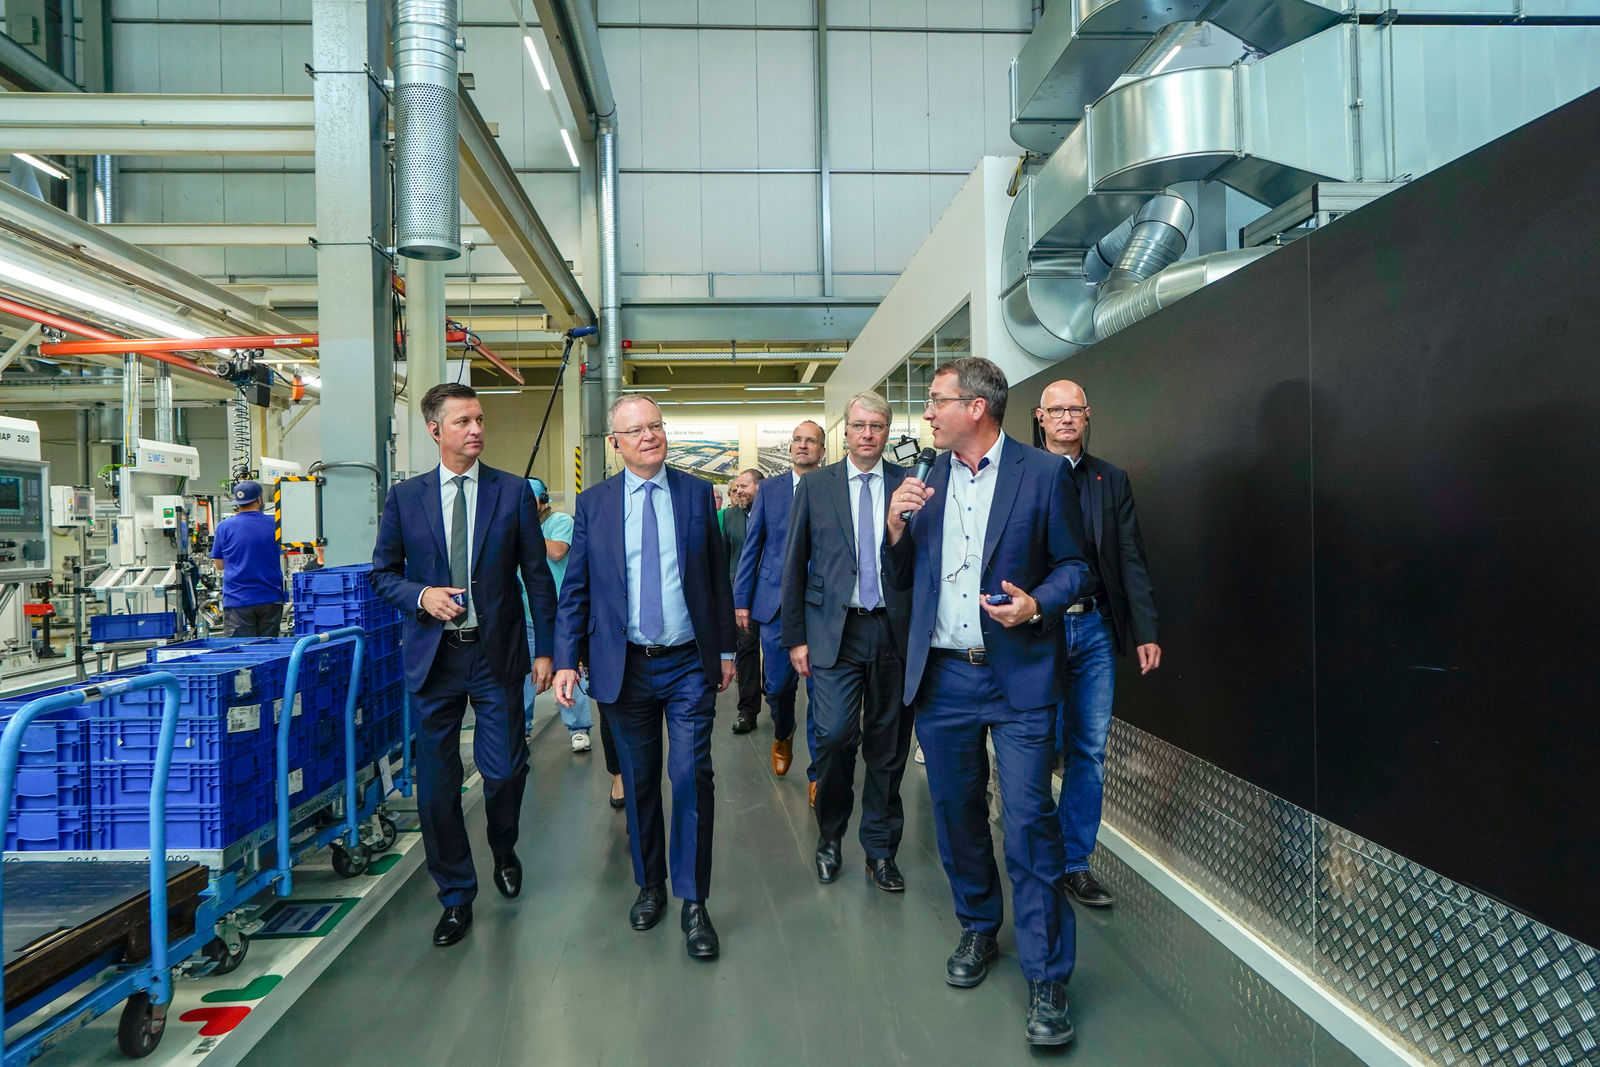 Ministerpräsident Stephan Weil heute im Volkswagen Werk Salzgitter - nächster Schritt des Wandels in die E-Mobilität mit Northvolt-Kooperation eingeleitet